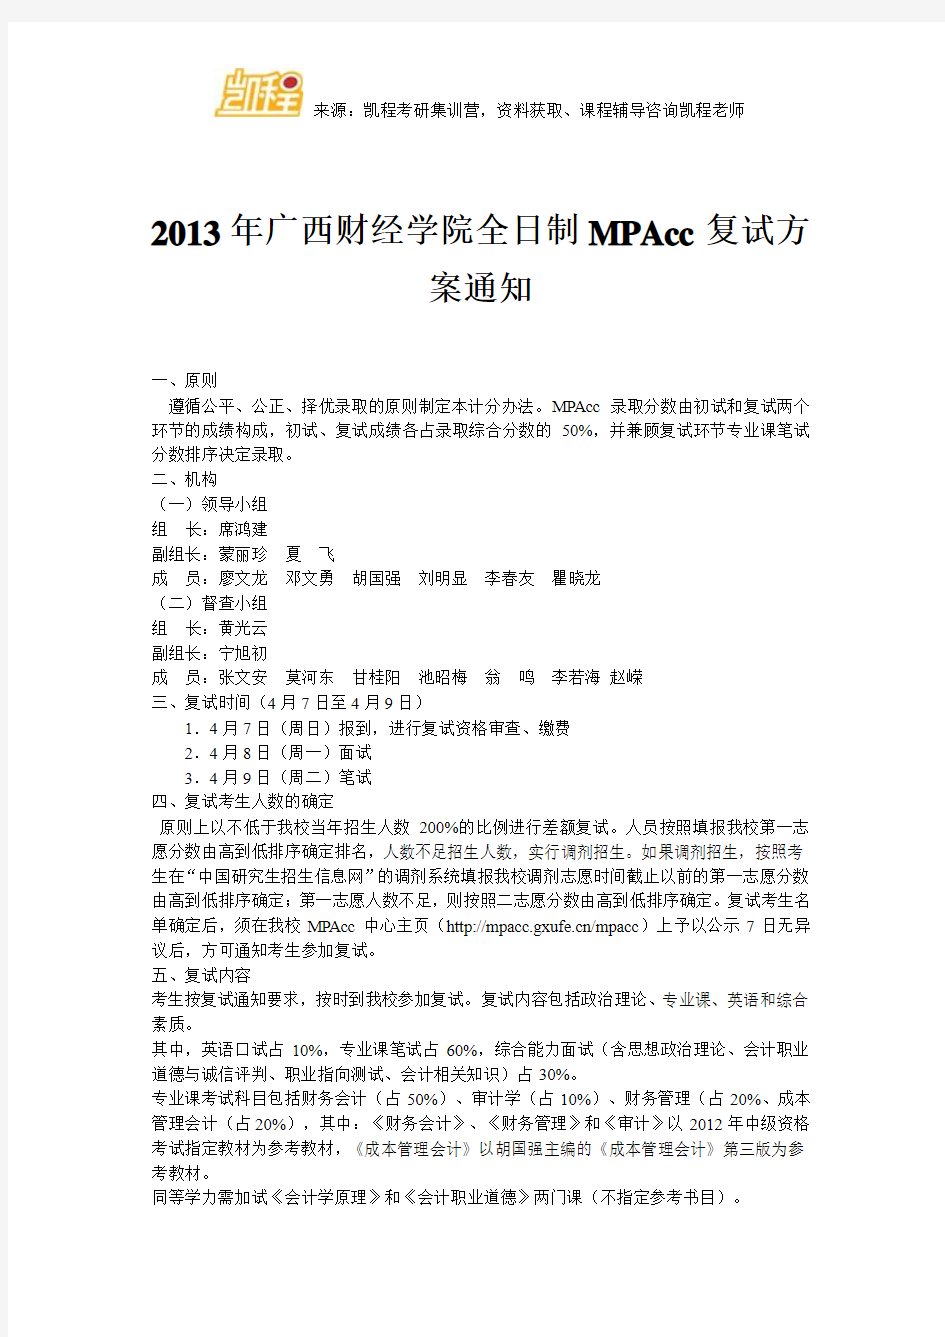 2013年广西财经学院全日制MPAcc复试方案通知